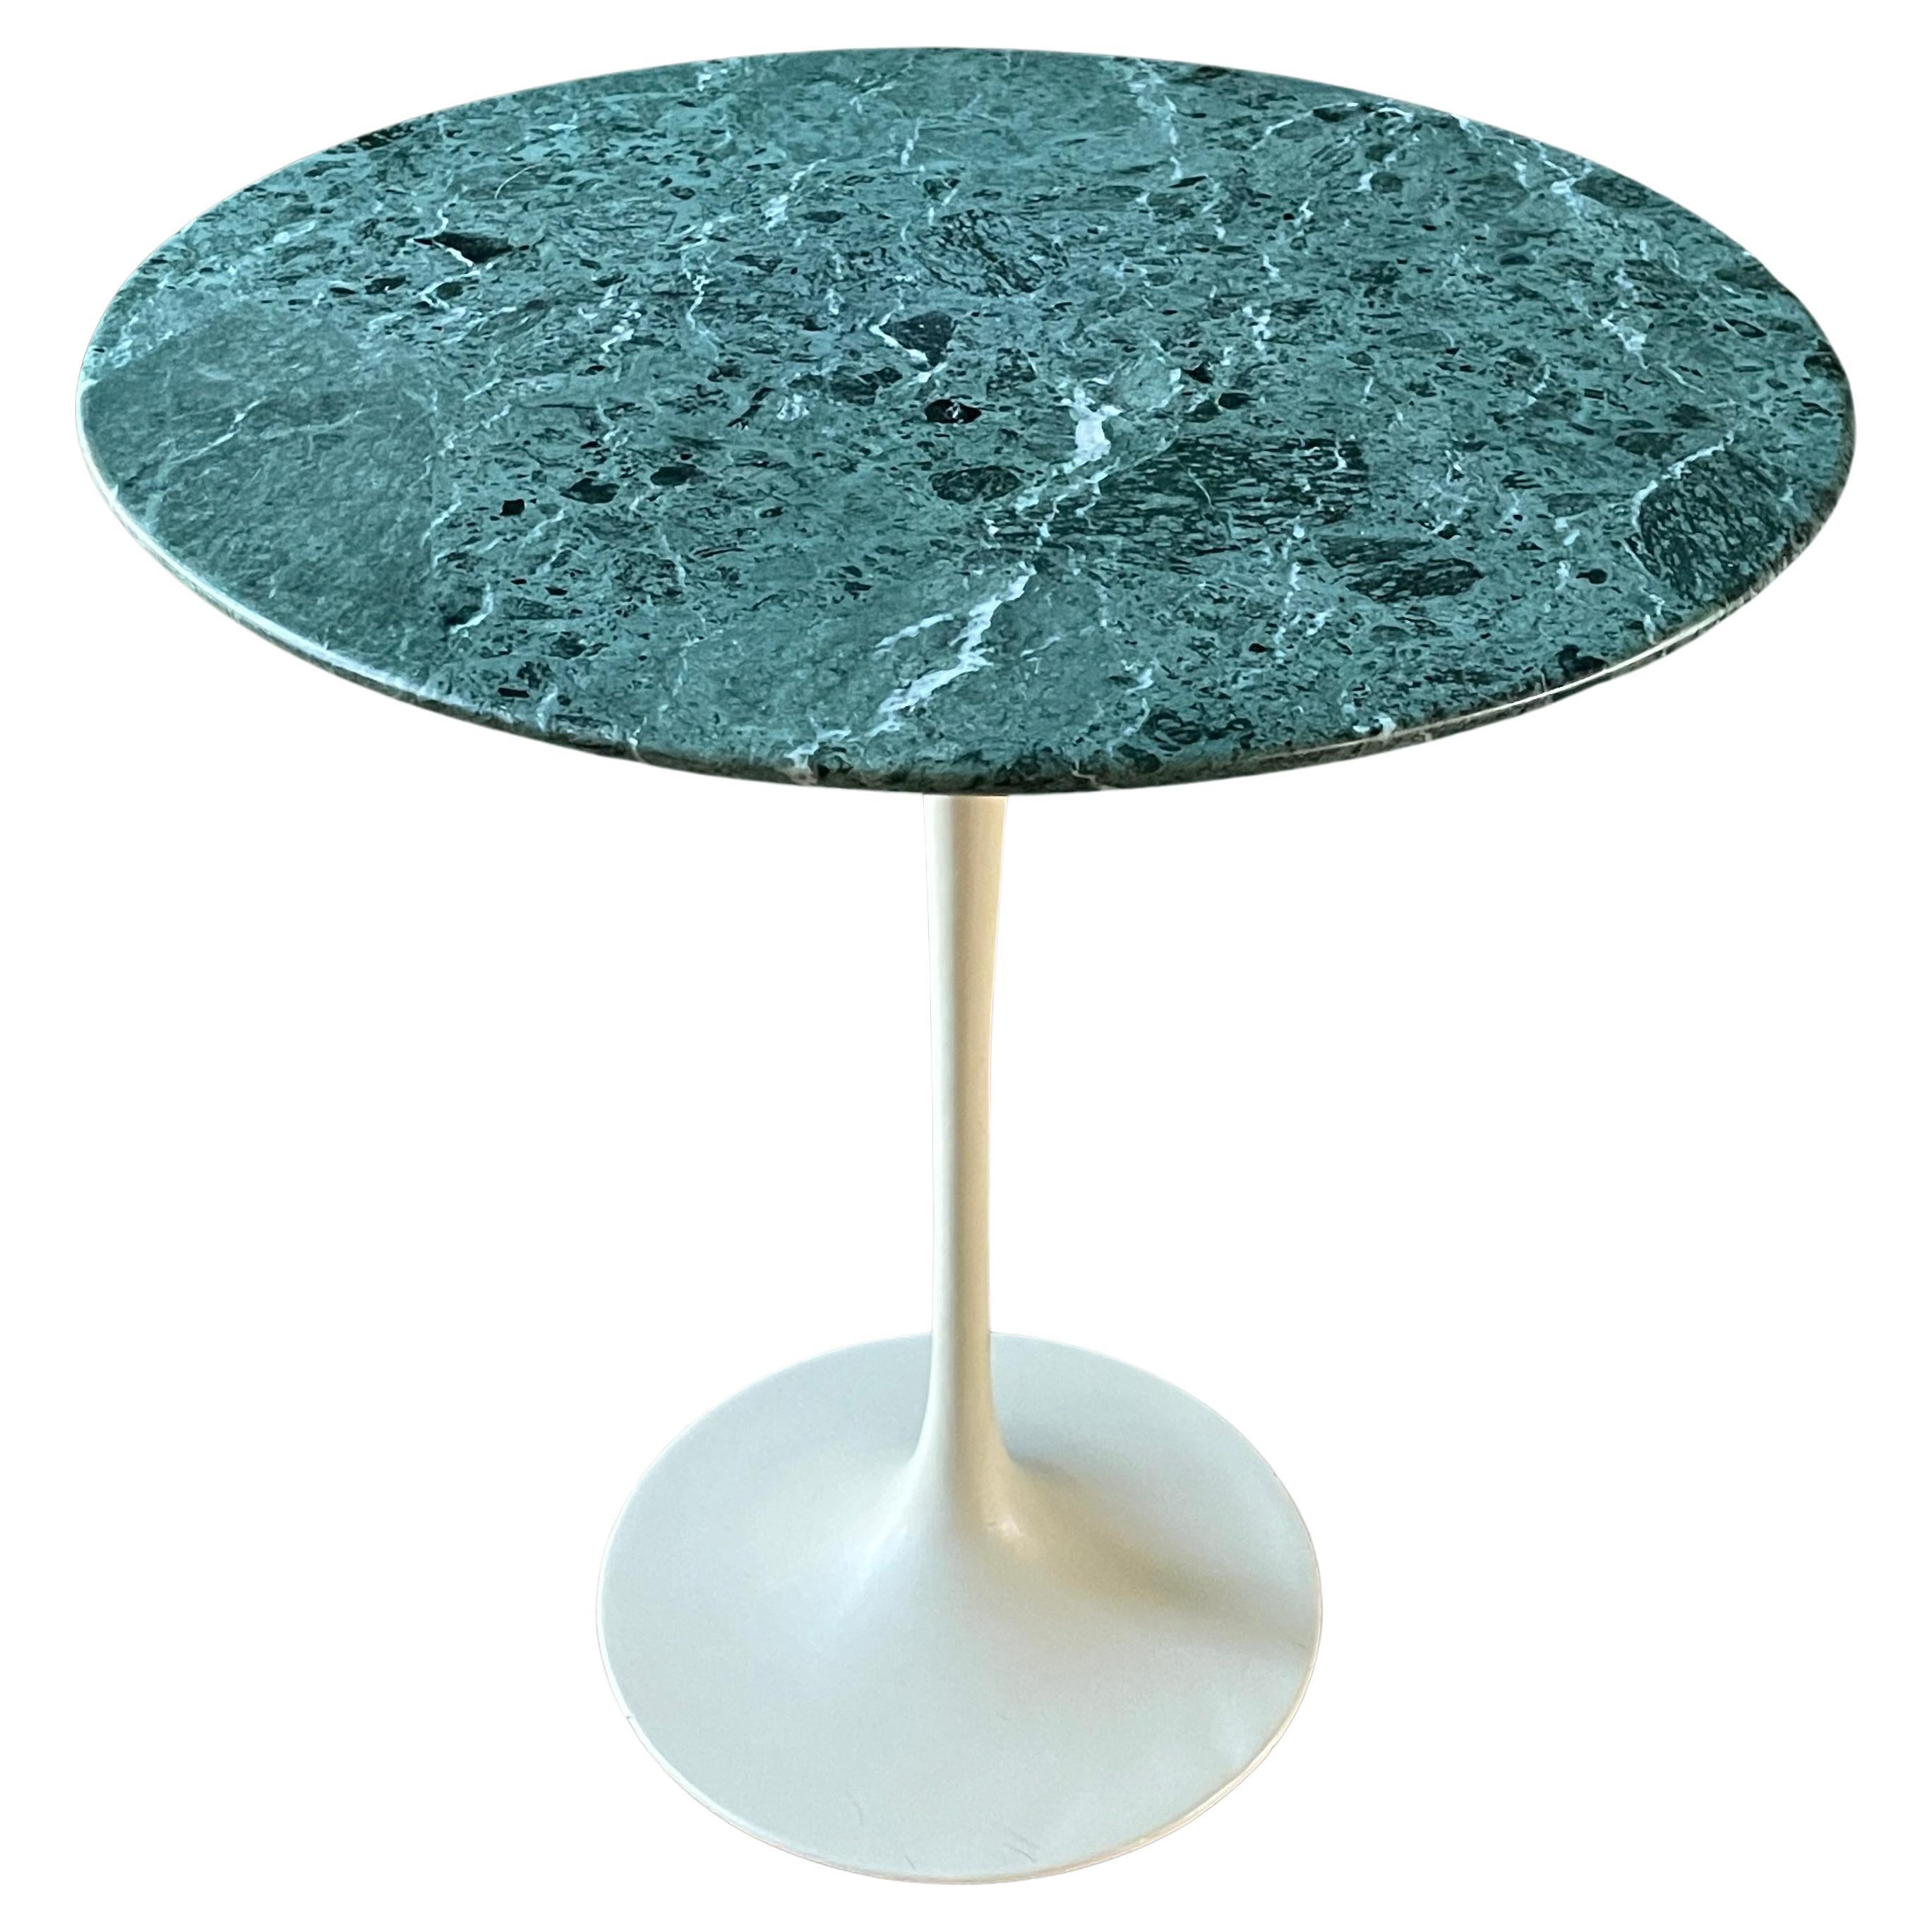 Knoll Green Verdi Alpi Marble Table Saarinen 1960s Vintage Mid-Century MCM Mod For Sale